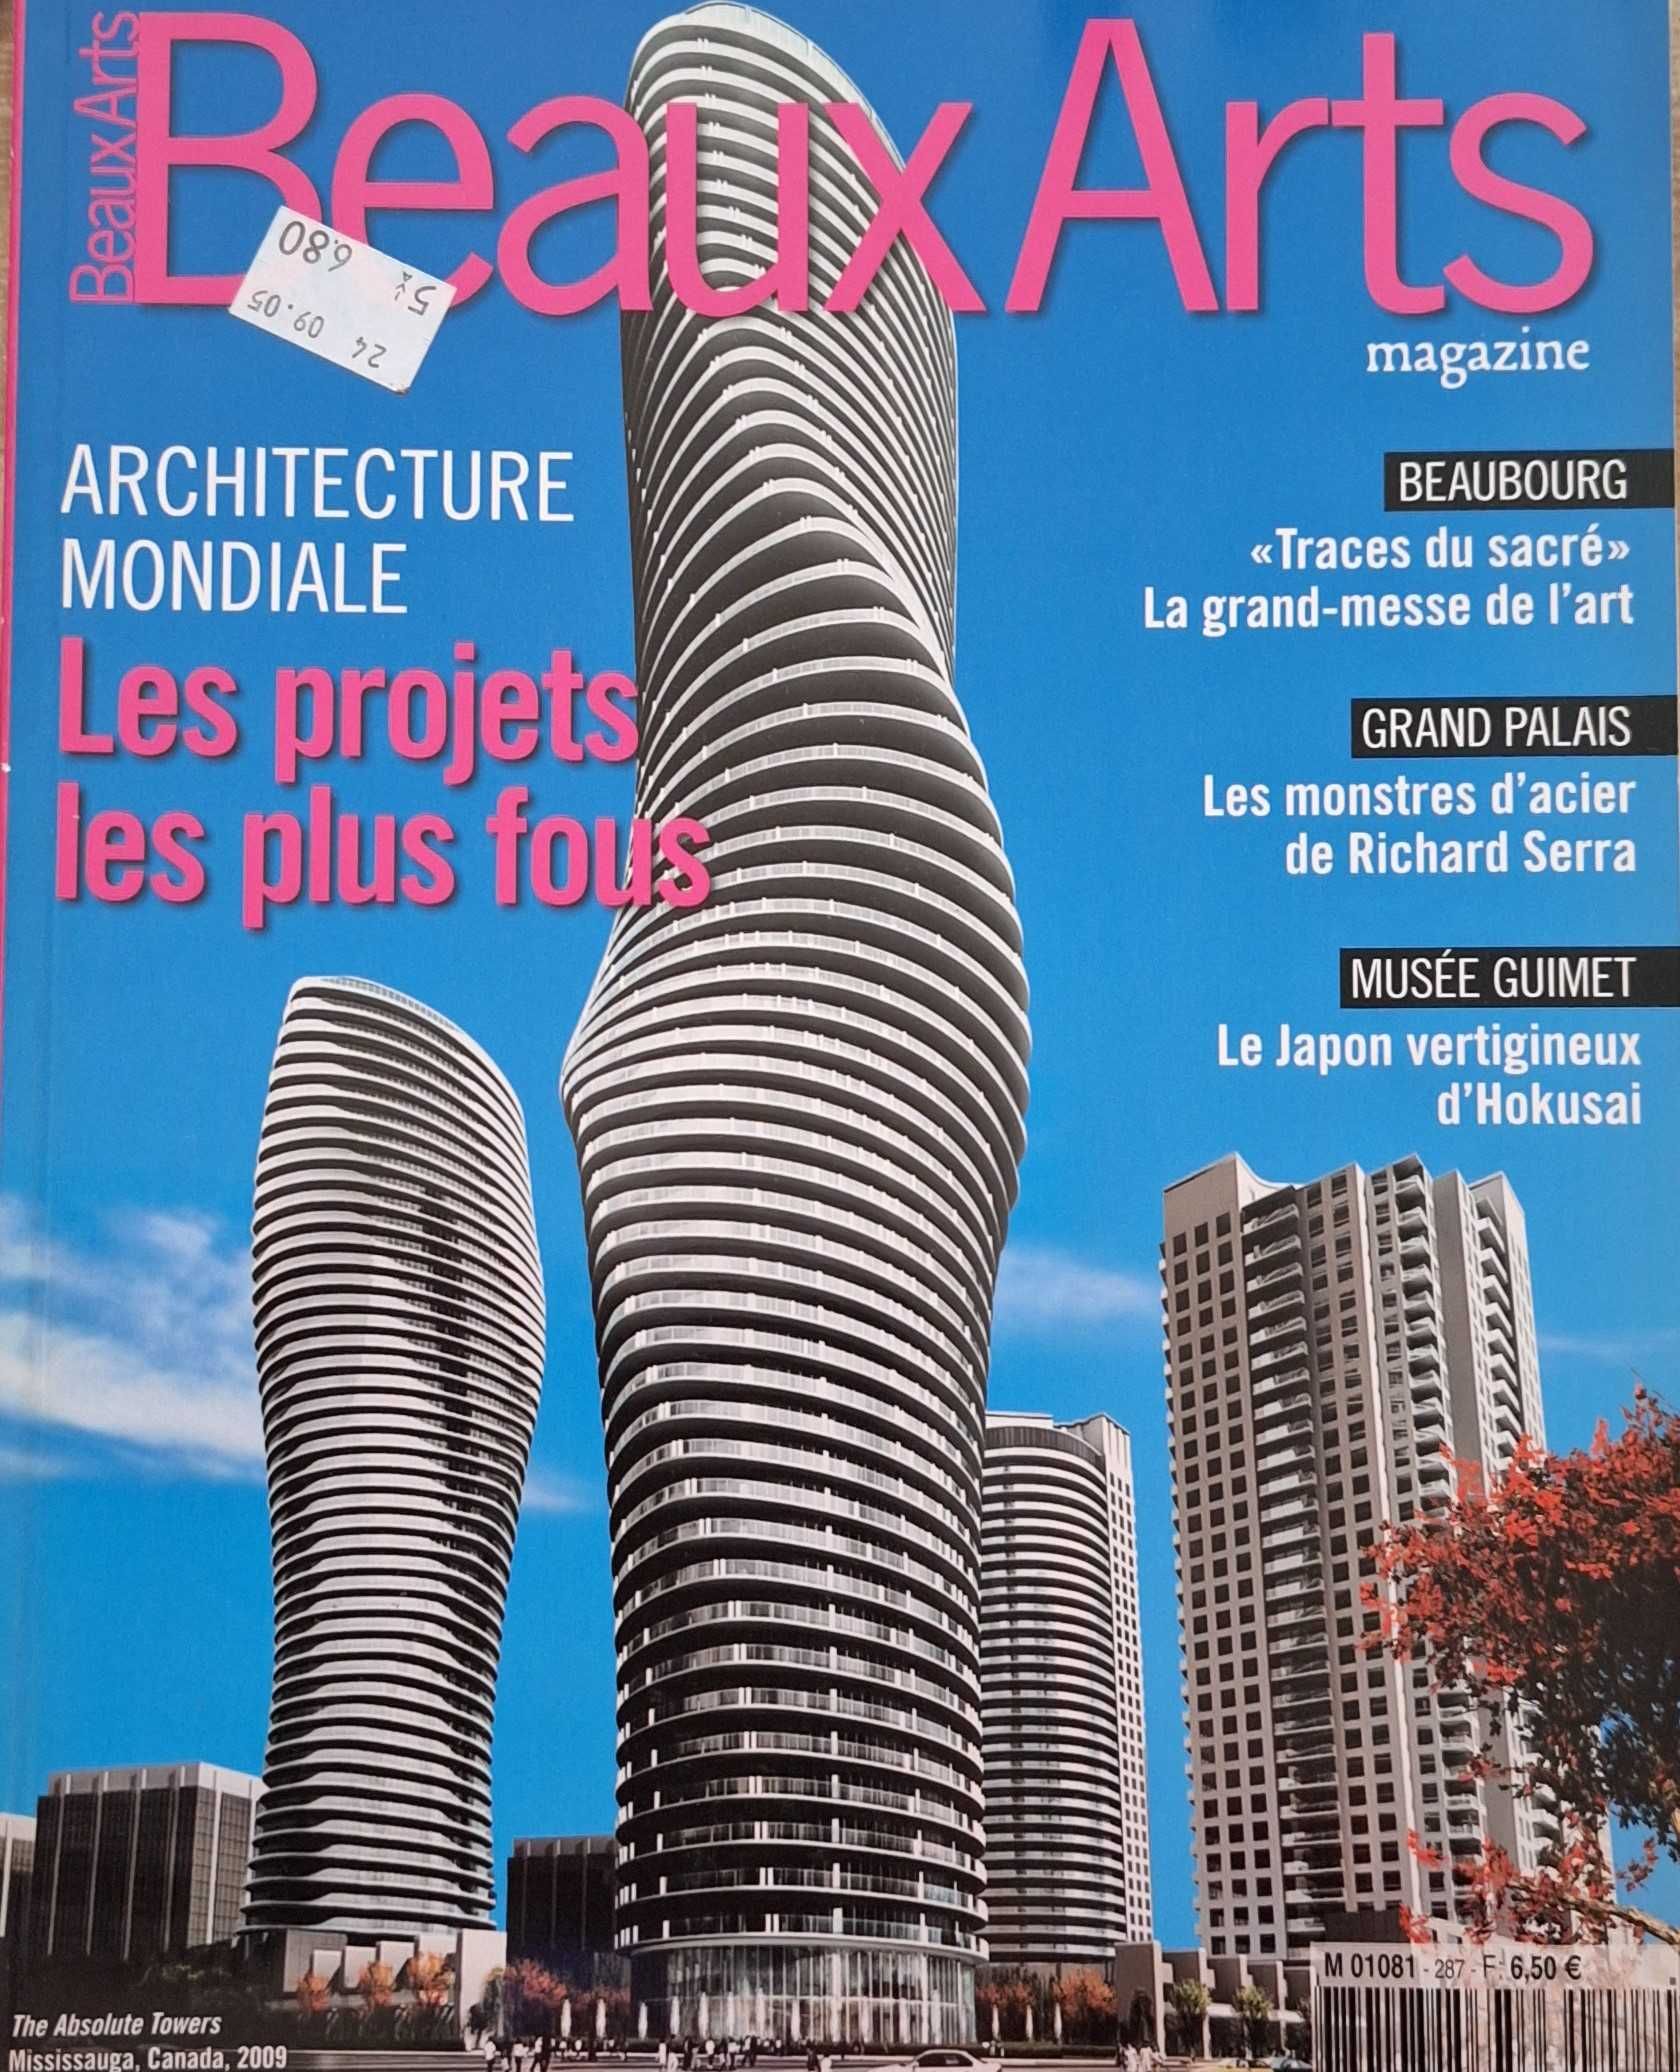 Revista Arquitetura Beaux Arts Maio 2008